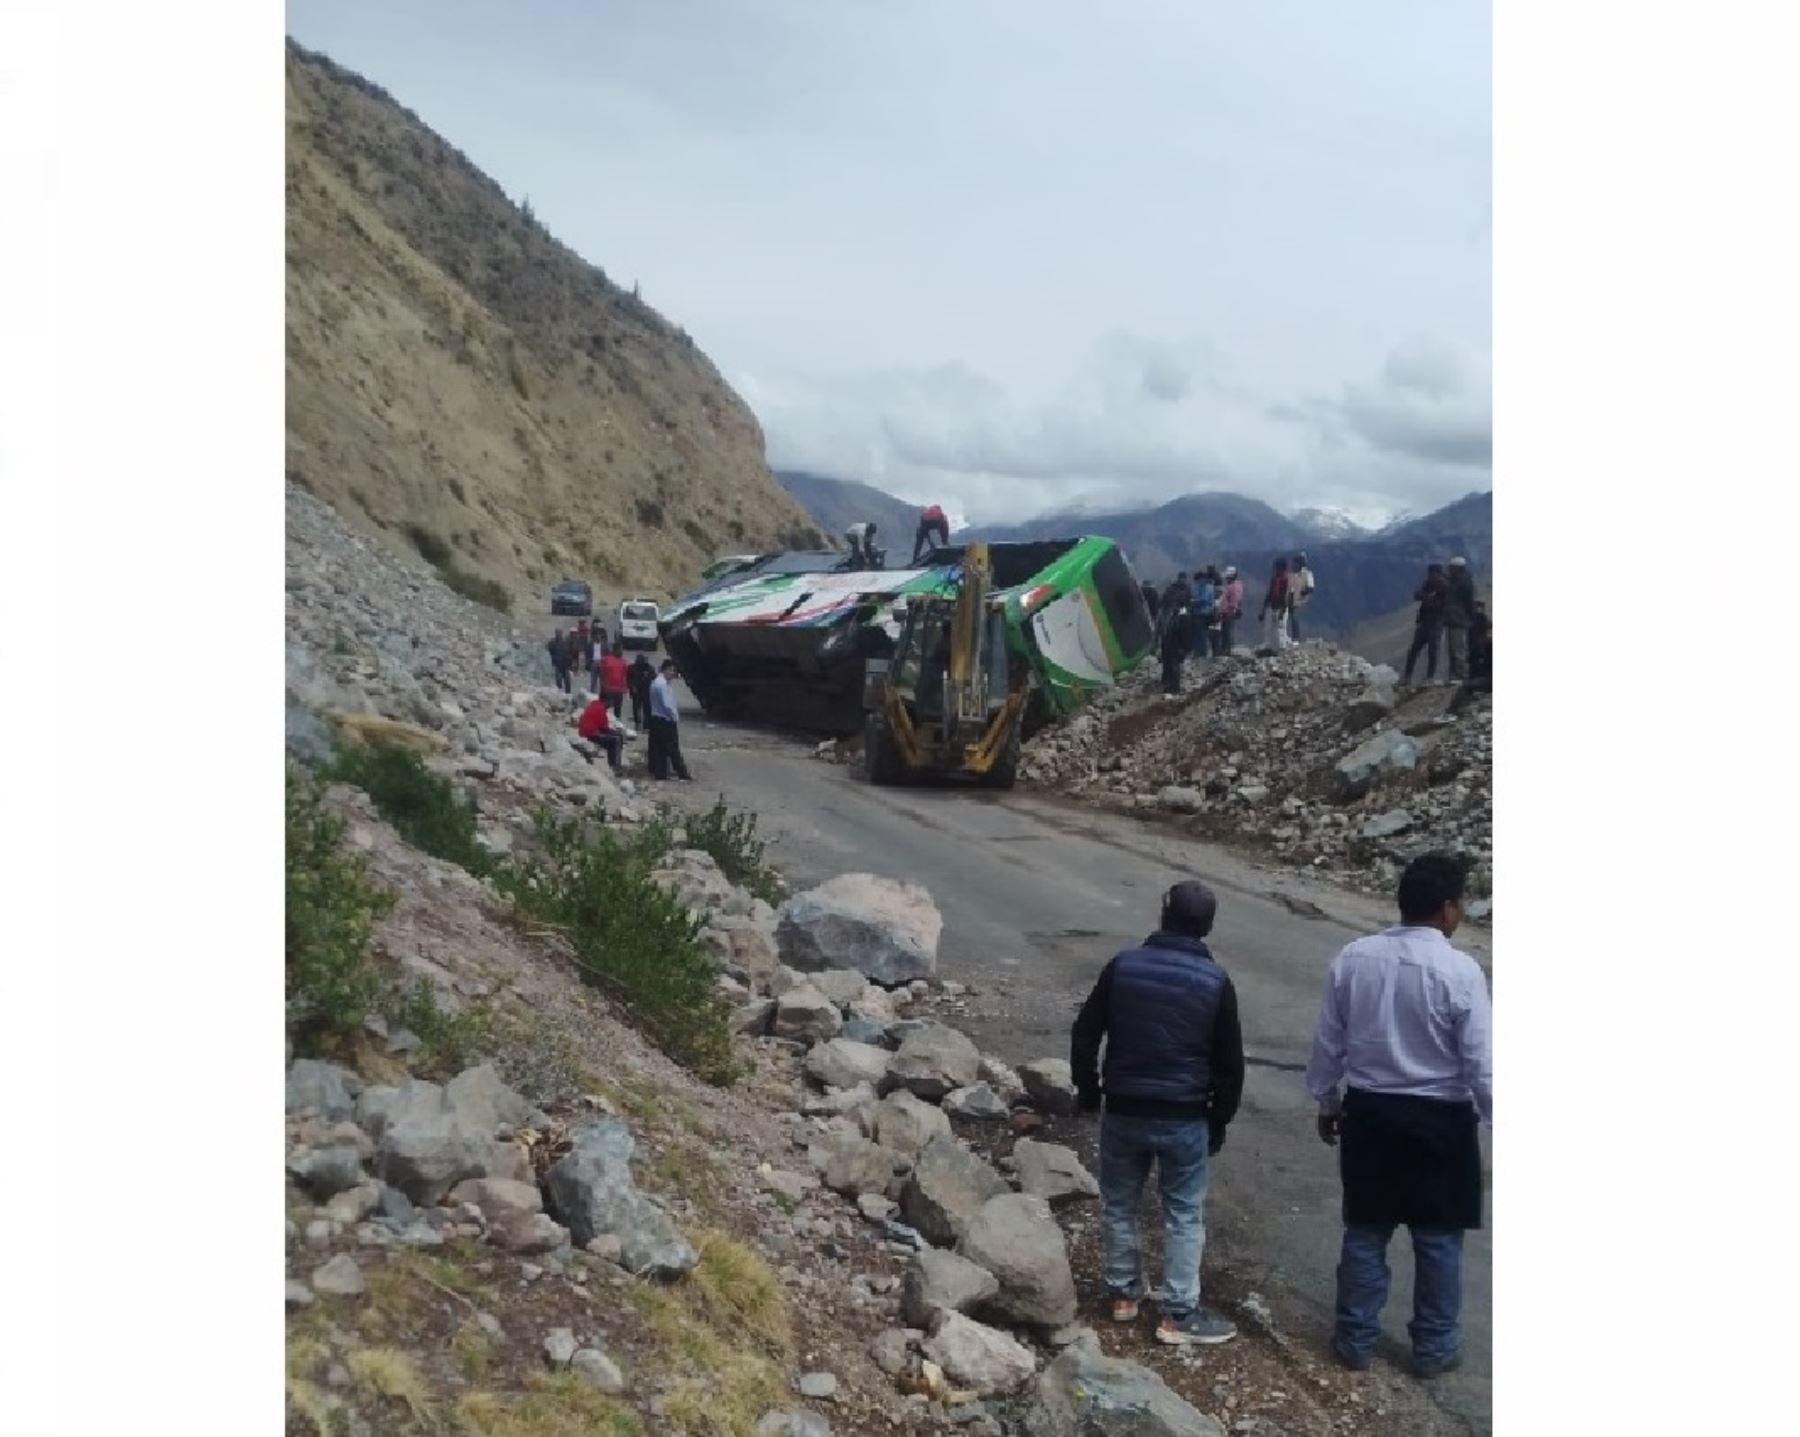 Autoridades de Arequipa restringieron el tránsito en la carretera que conduce al mirador Cruz del Cóndor, ubicado en el Valle del Colca, debido a deslizamientos causados por lluvias intensas.